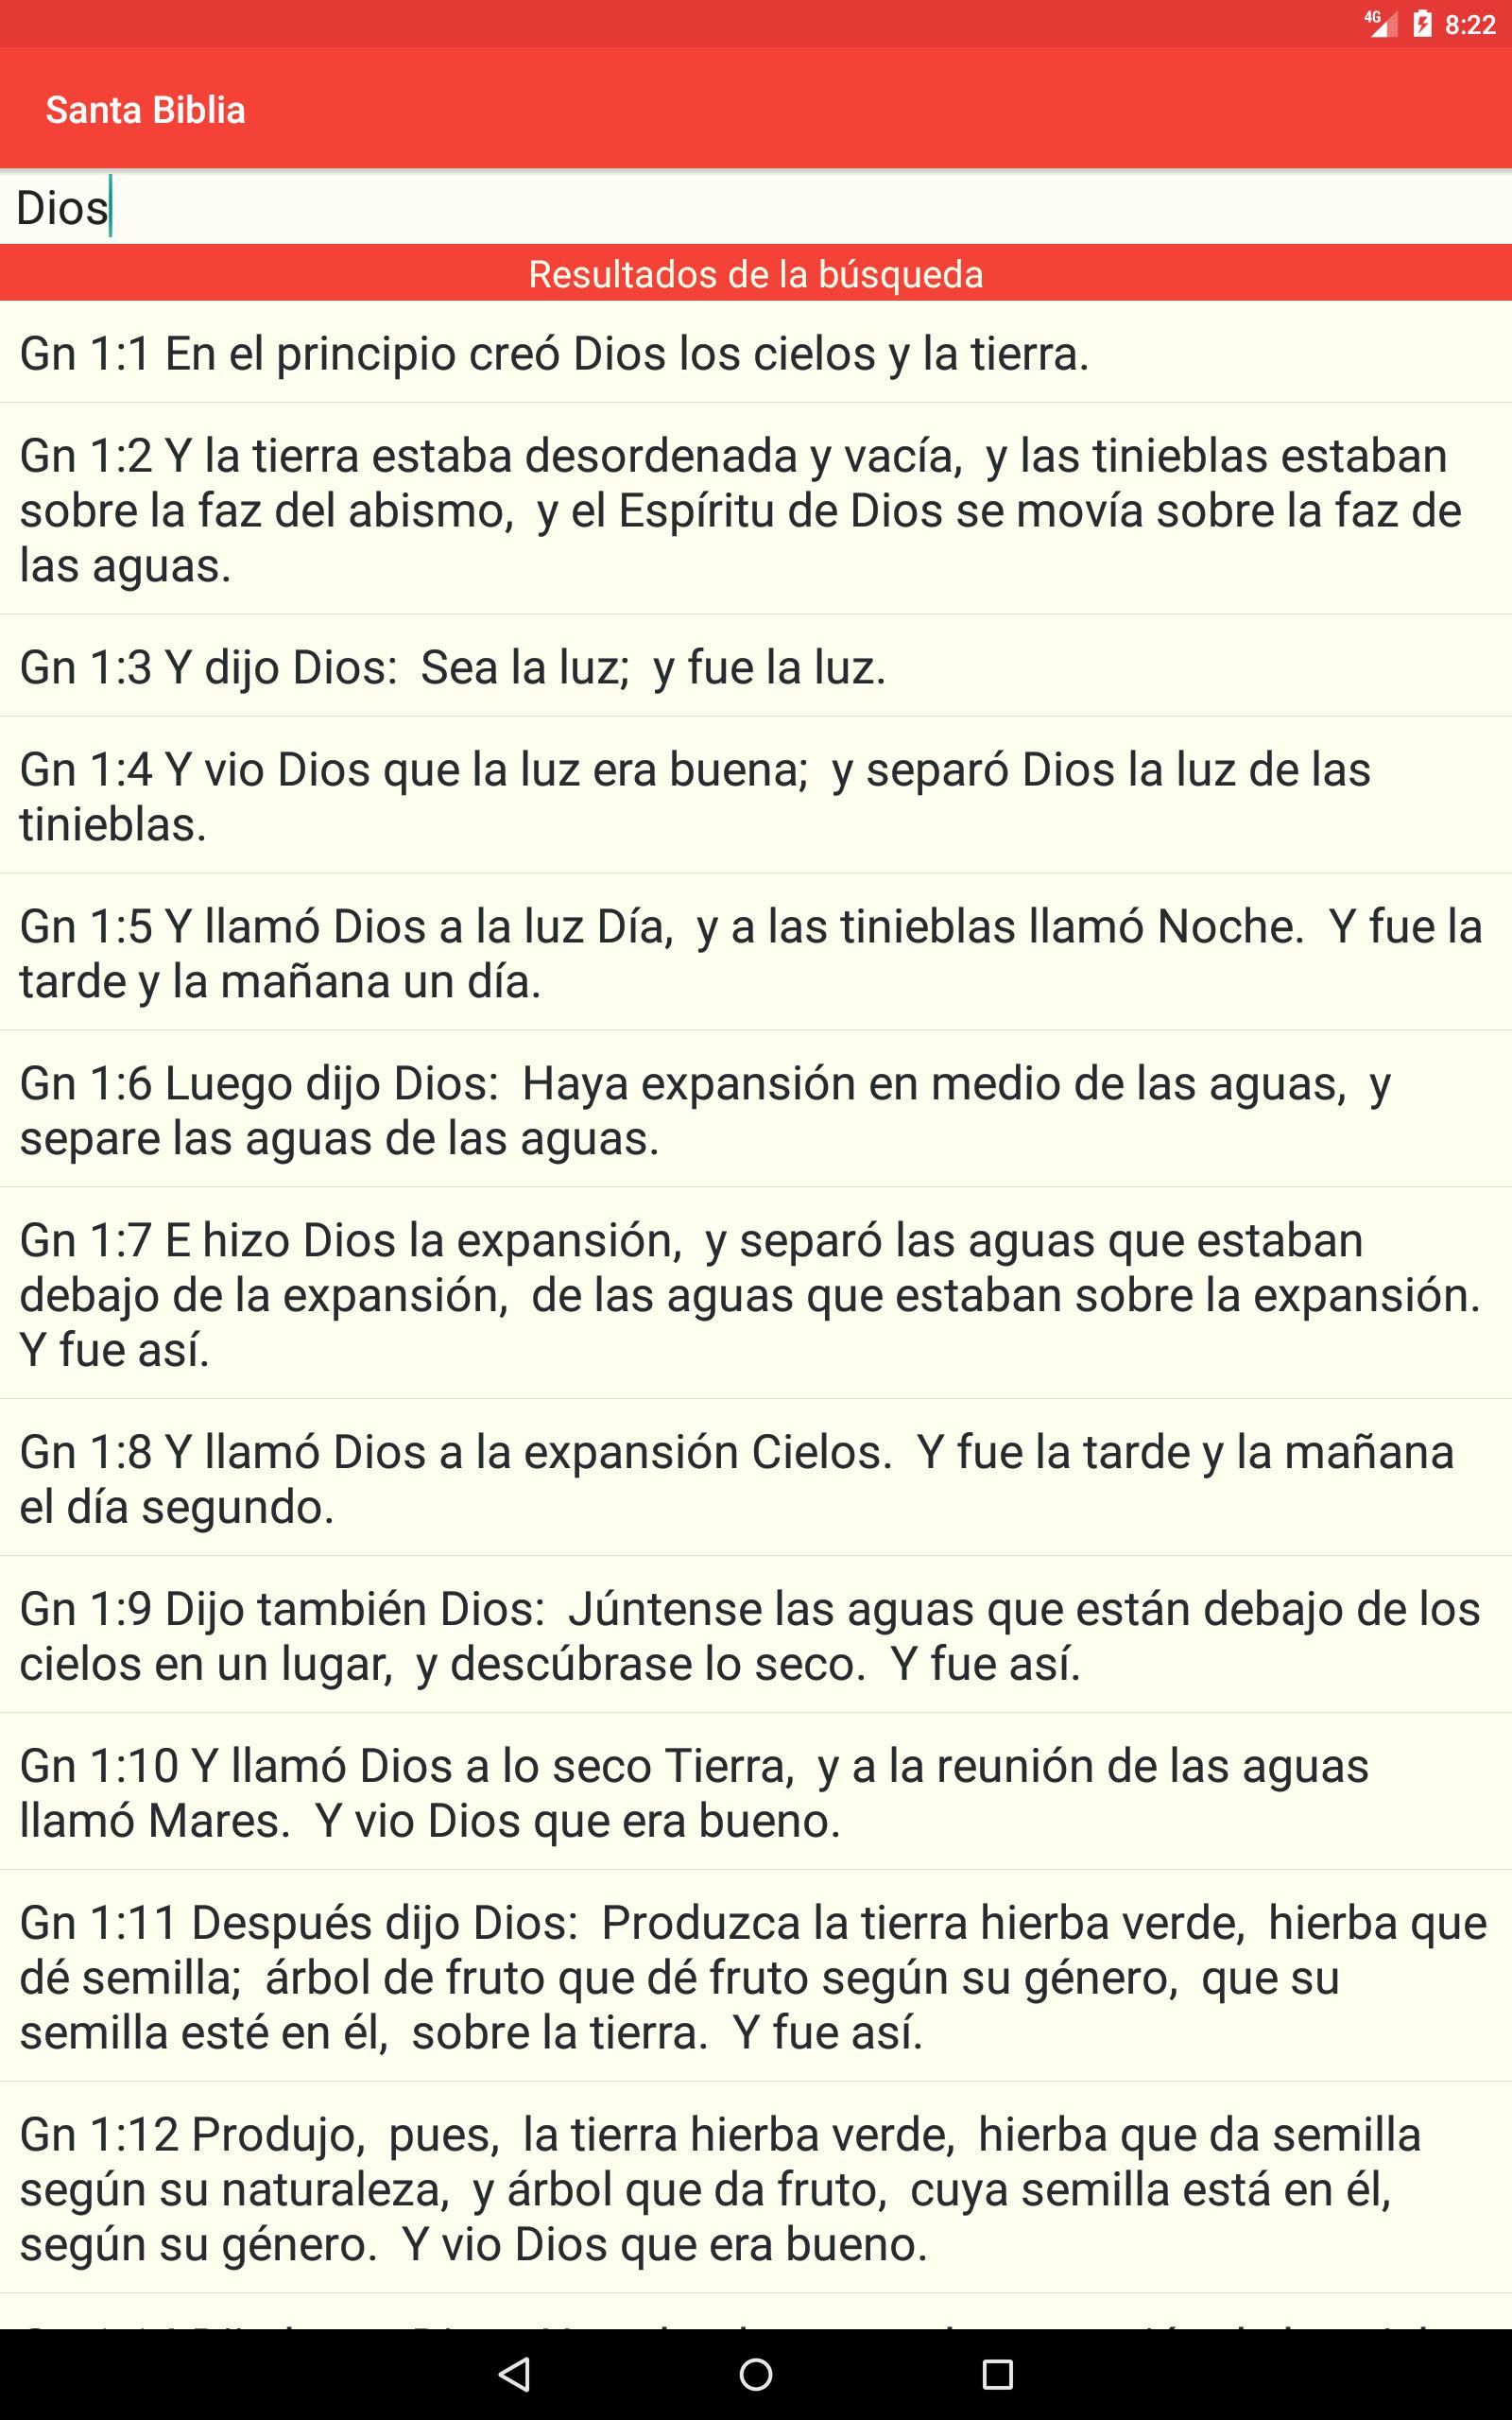 Santa Biblia Gratis 4.4.1 Screenshot 13